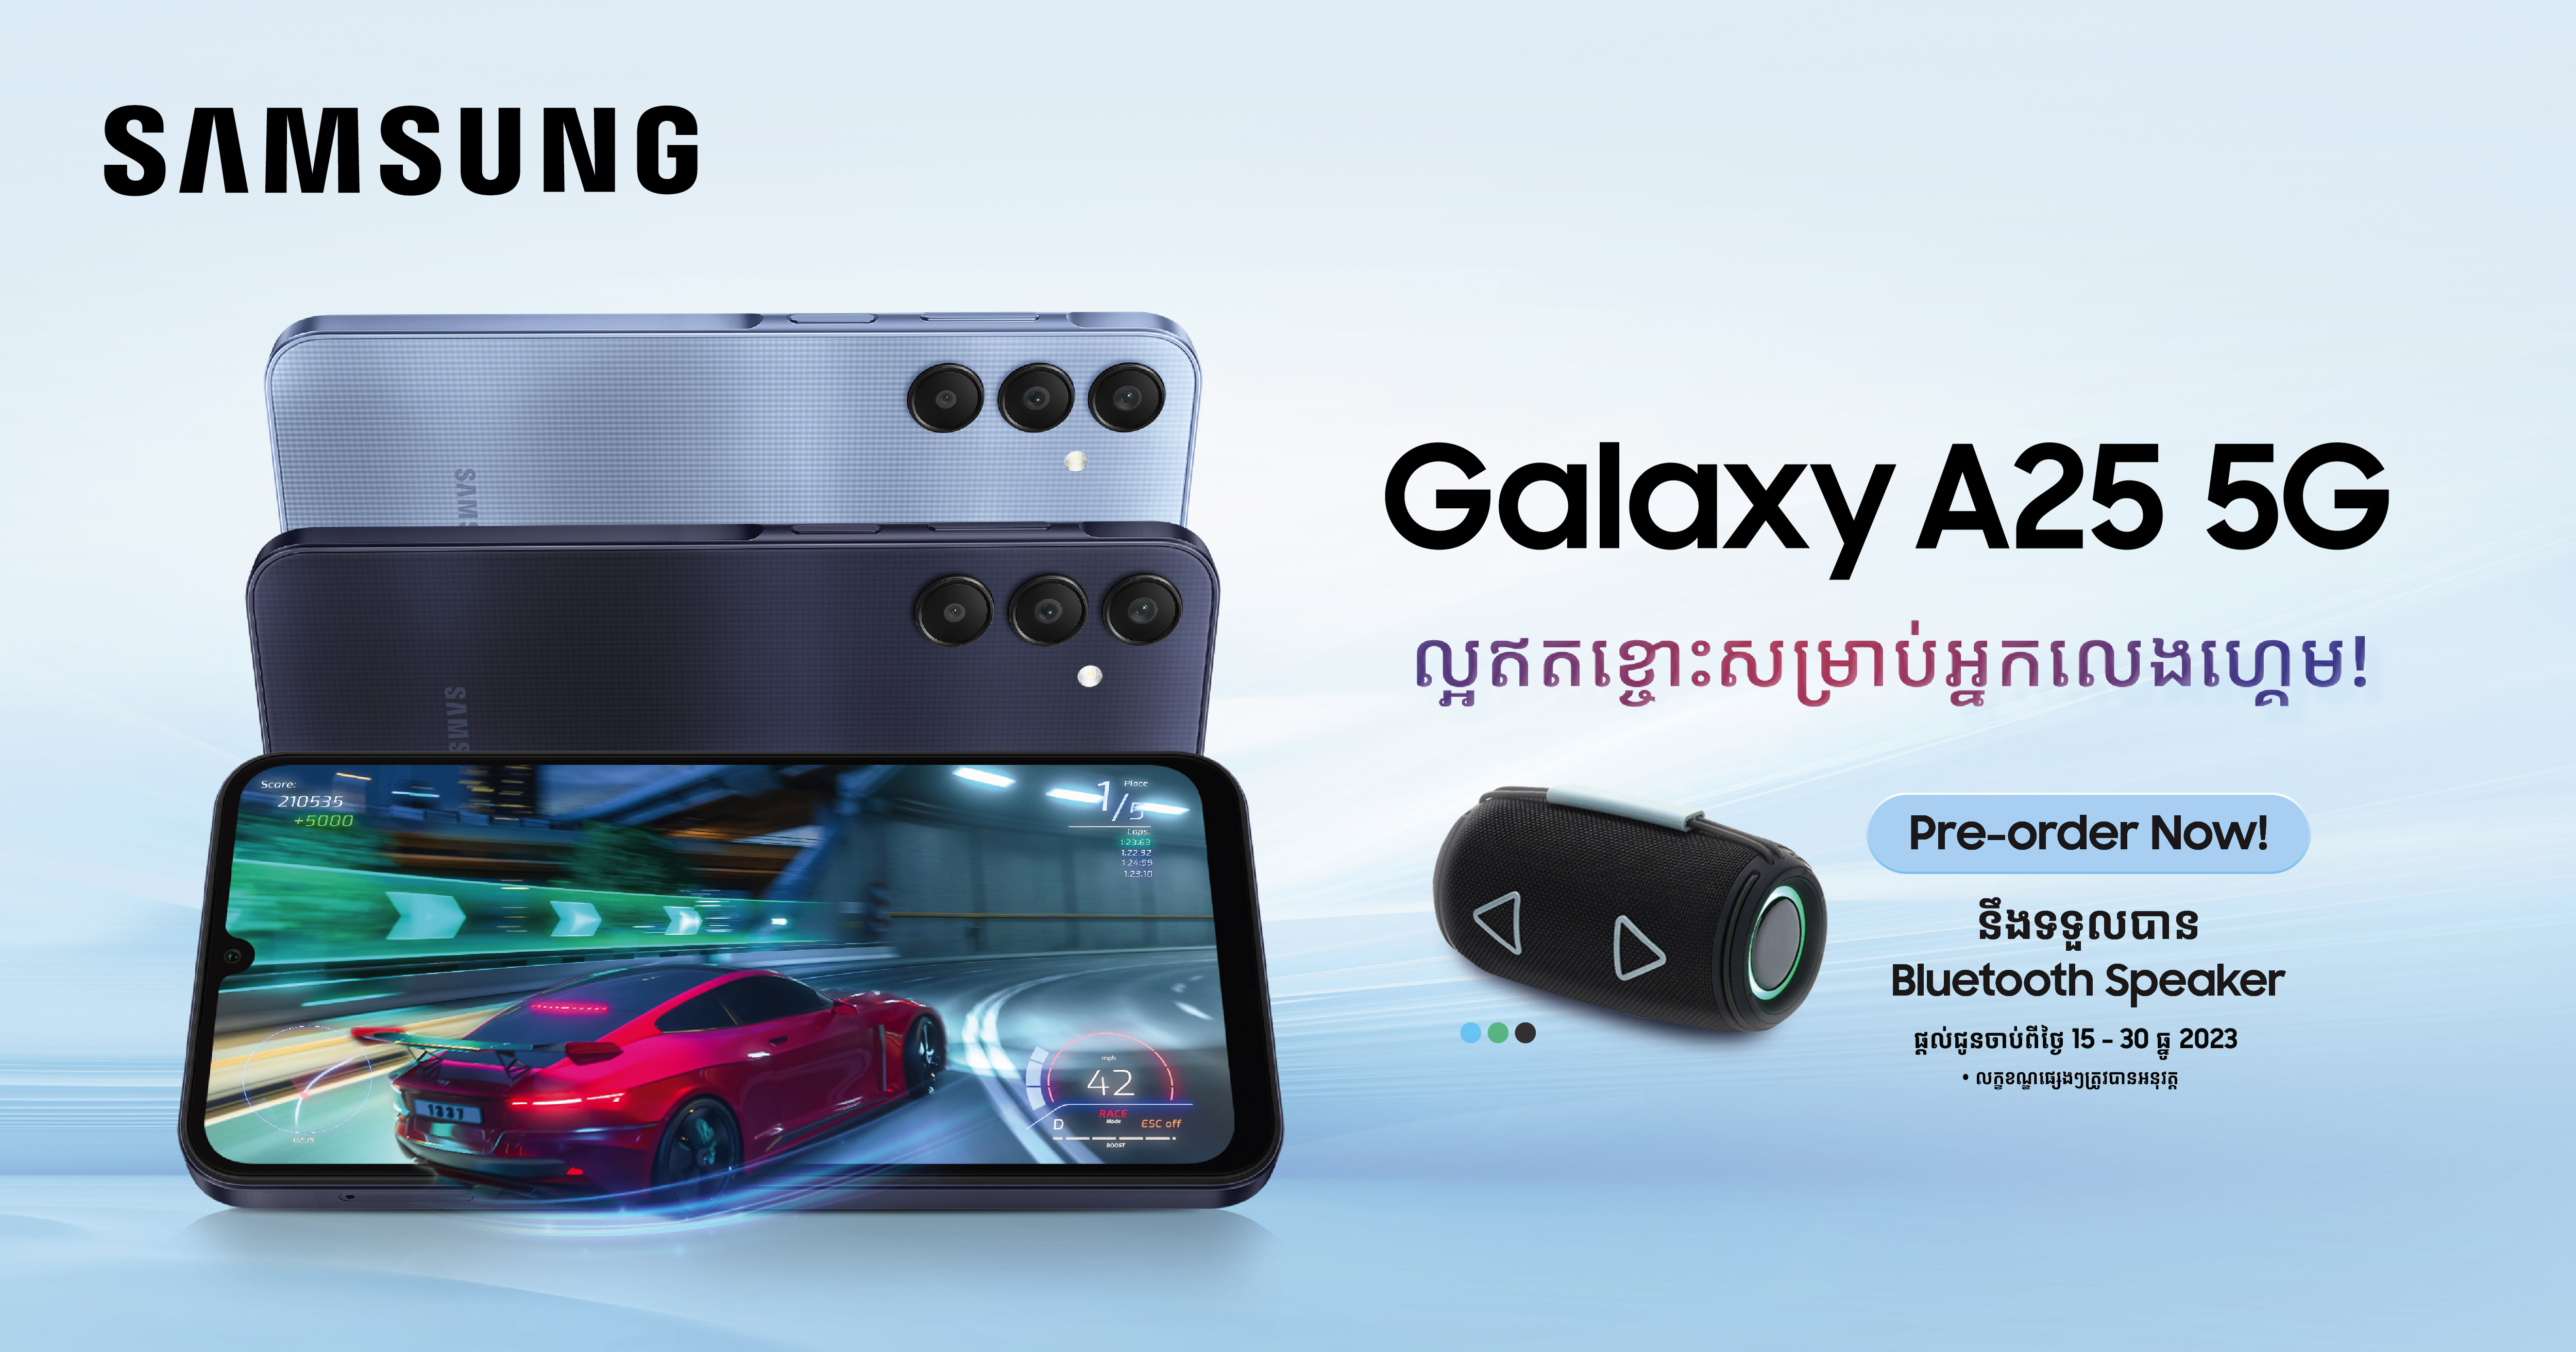 អ៊េមទៀតហើយ! ជាមួយកាដូថែមជូនដ៏ពិសេសពី Samsung Galaxy A25 ស៊េរីថ្មីបំផុត បង្ហាញខ្លួនជាផ្លូវការនៅកម្ពុជា…!